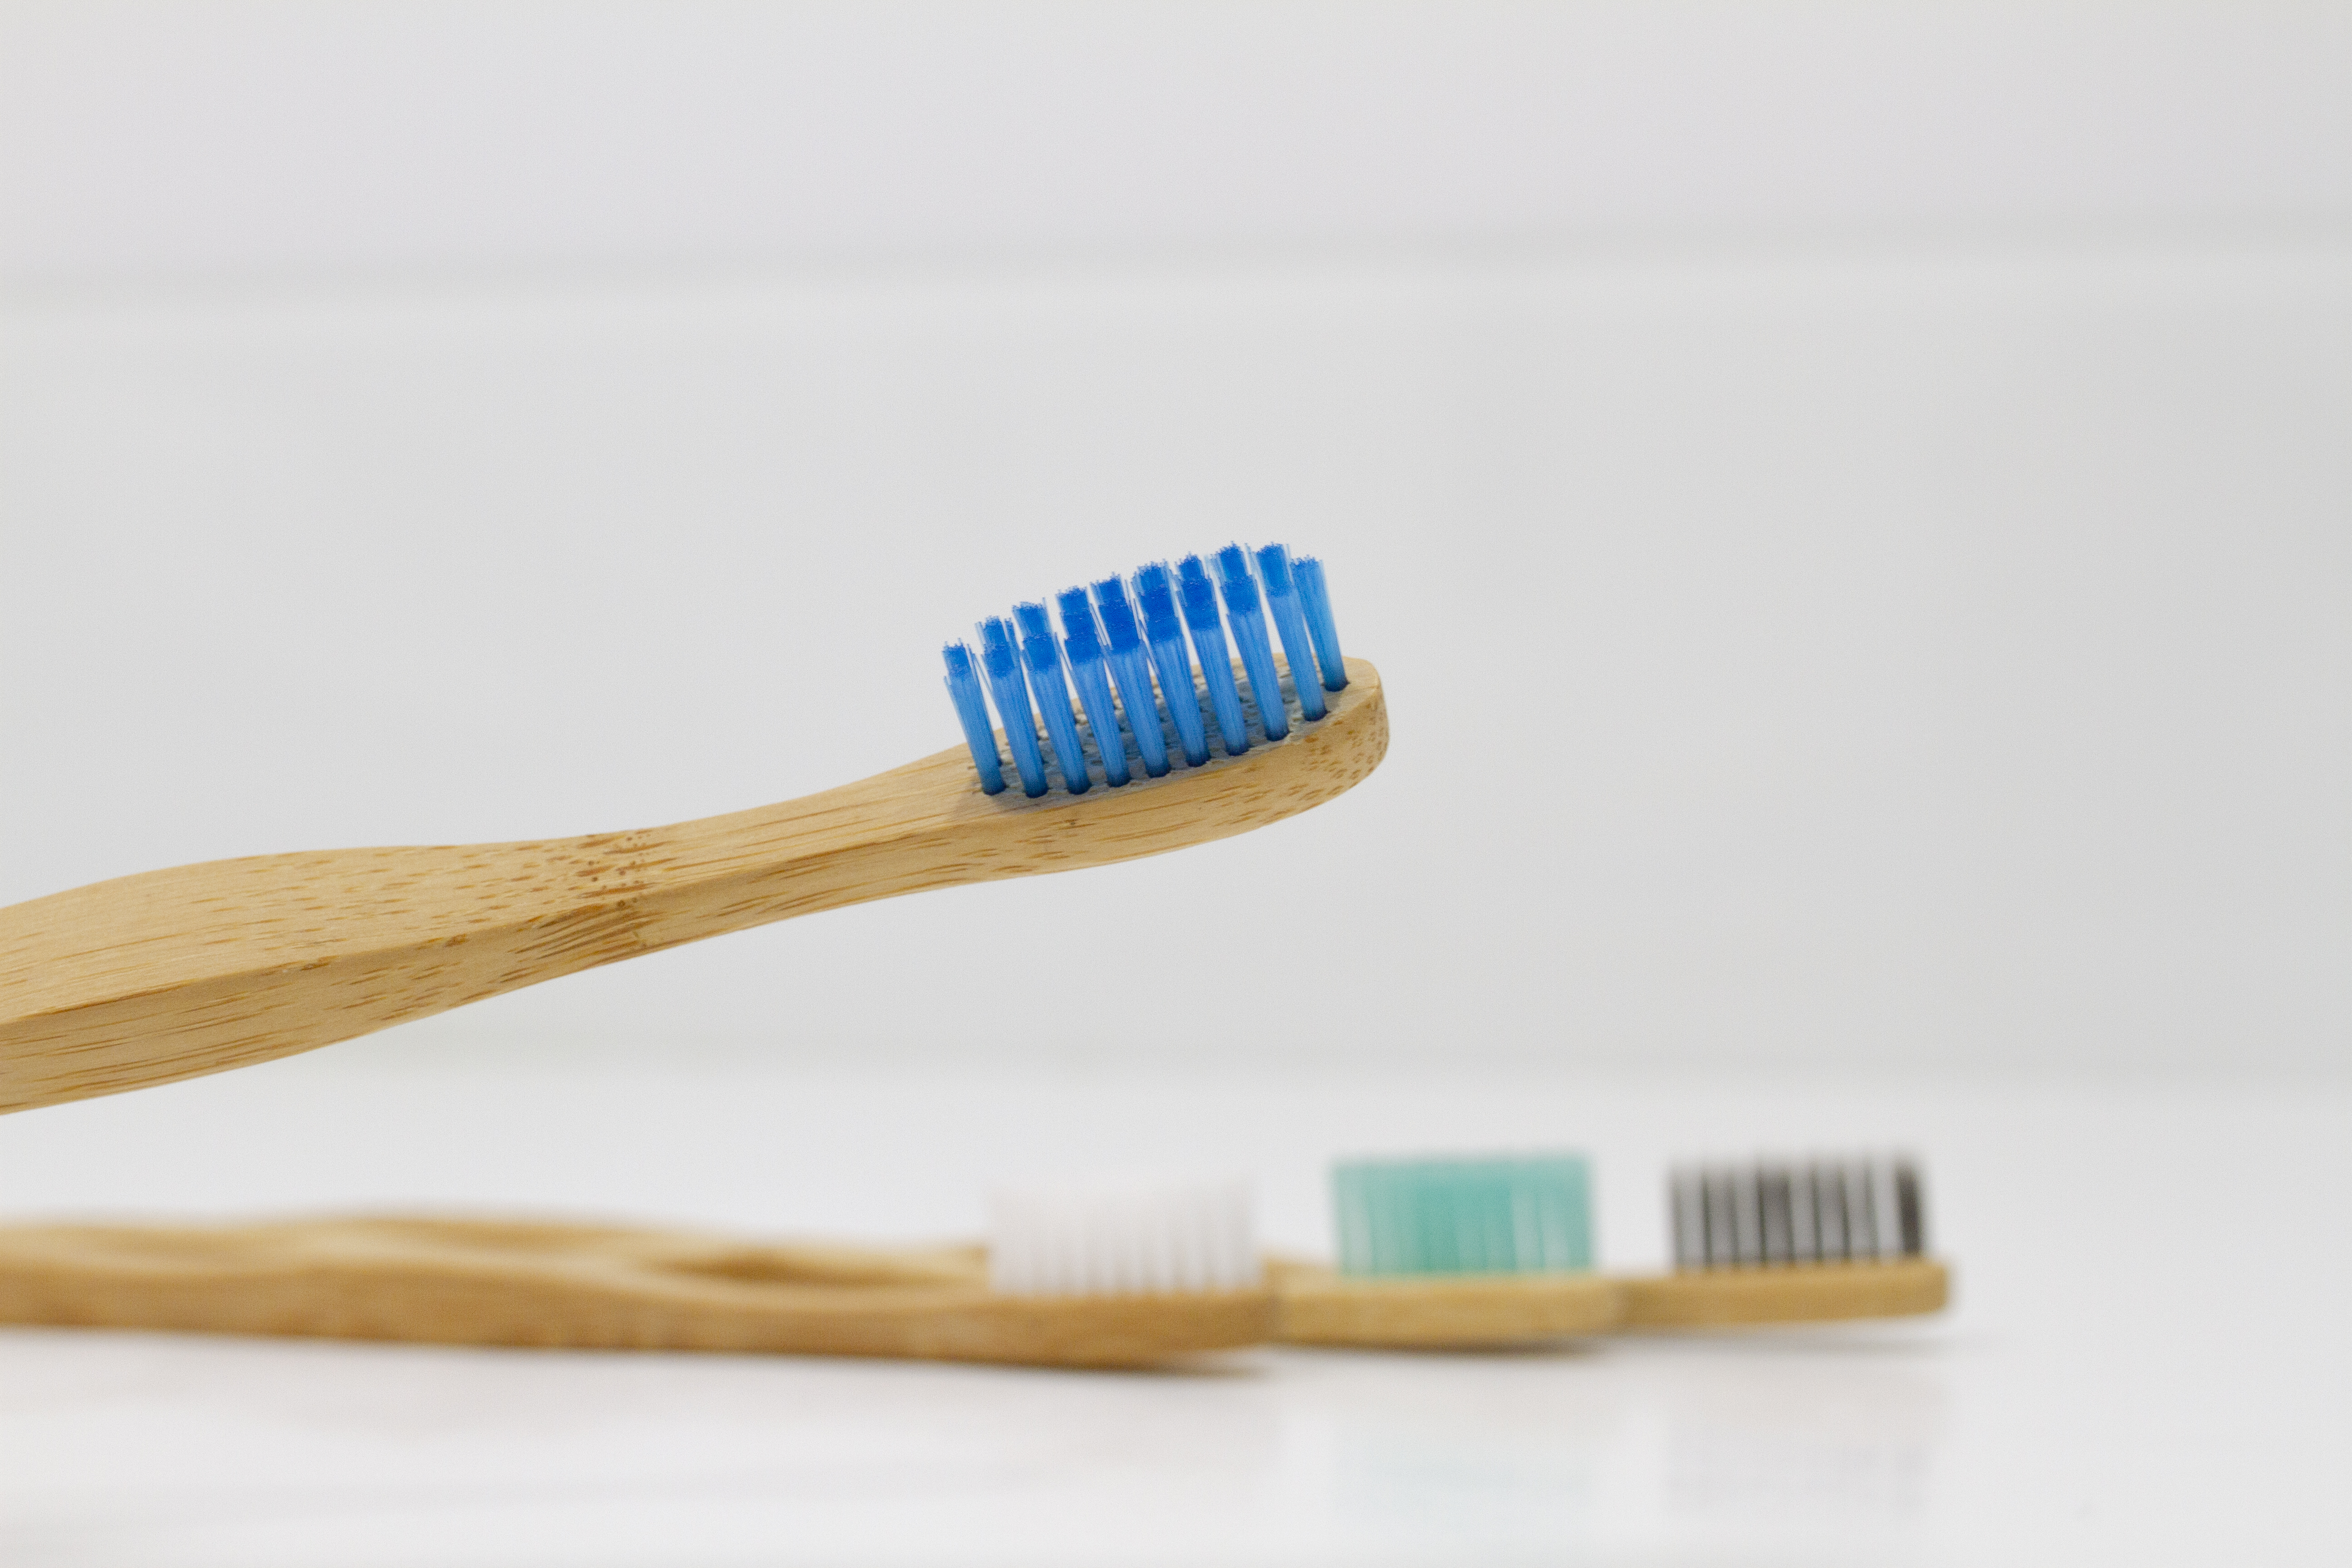 Los odontólogos de la Clínica Dental Ferrus & Bratos han utilizado los cepillos de dientes de bambú para comprobar si son seguros para la boca. FOTO: Clínica Dental Ferrus & Bratos